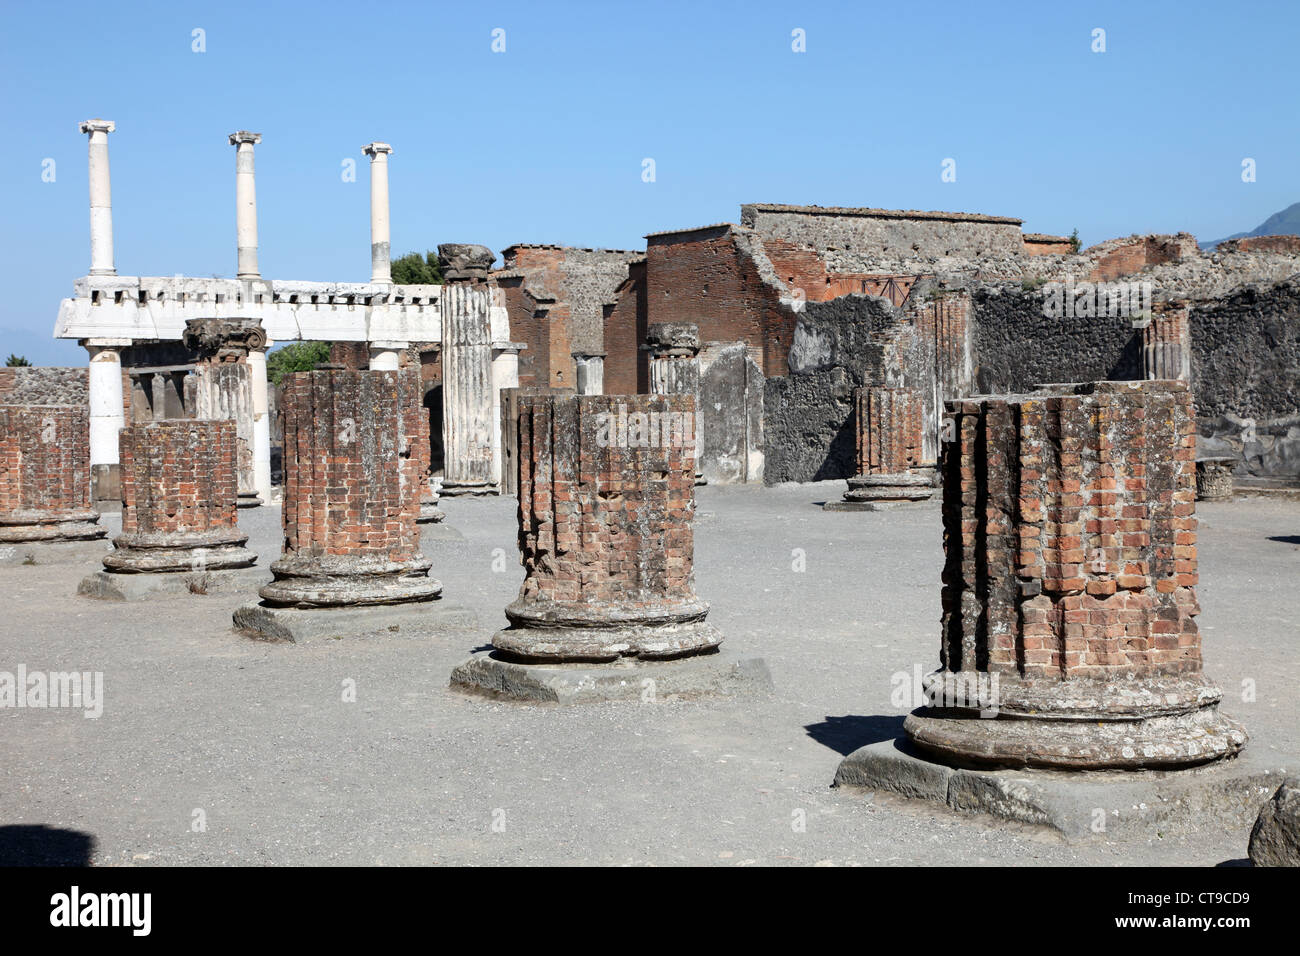 Pilares de ladrillo romano de Pompeya, la ciudad sepultada bajo las cenizas de la erupción del Monte Vesubio Foto de stock